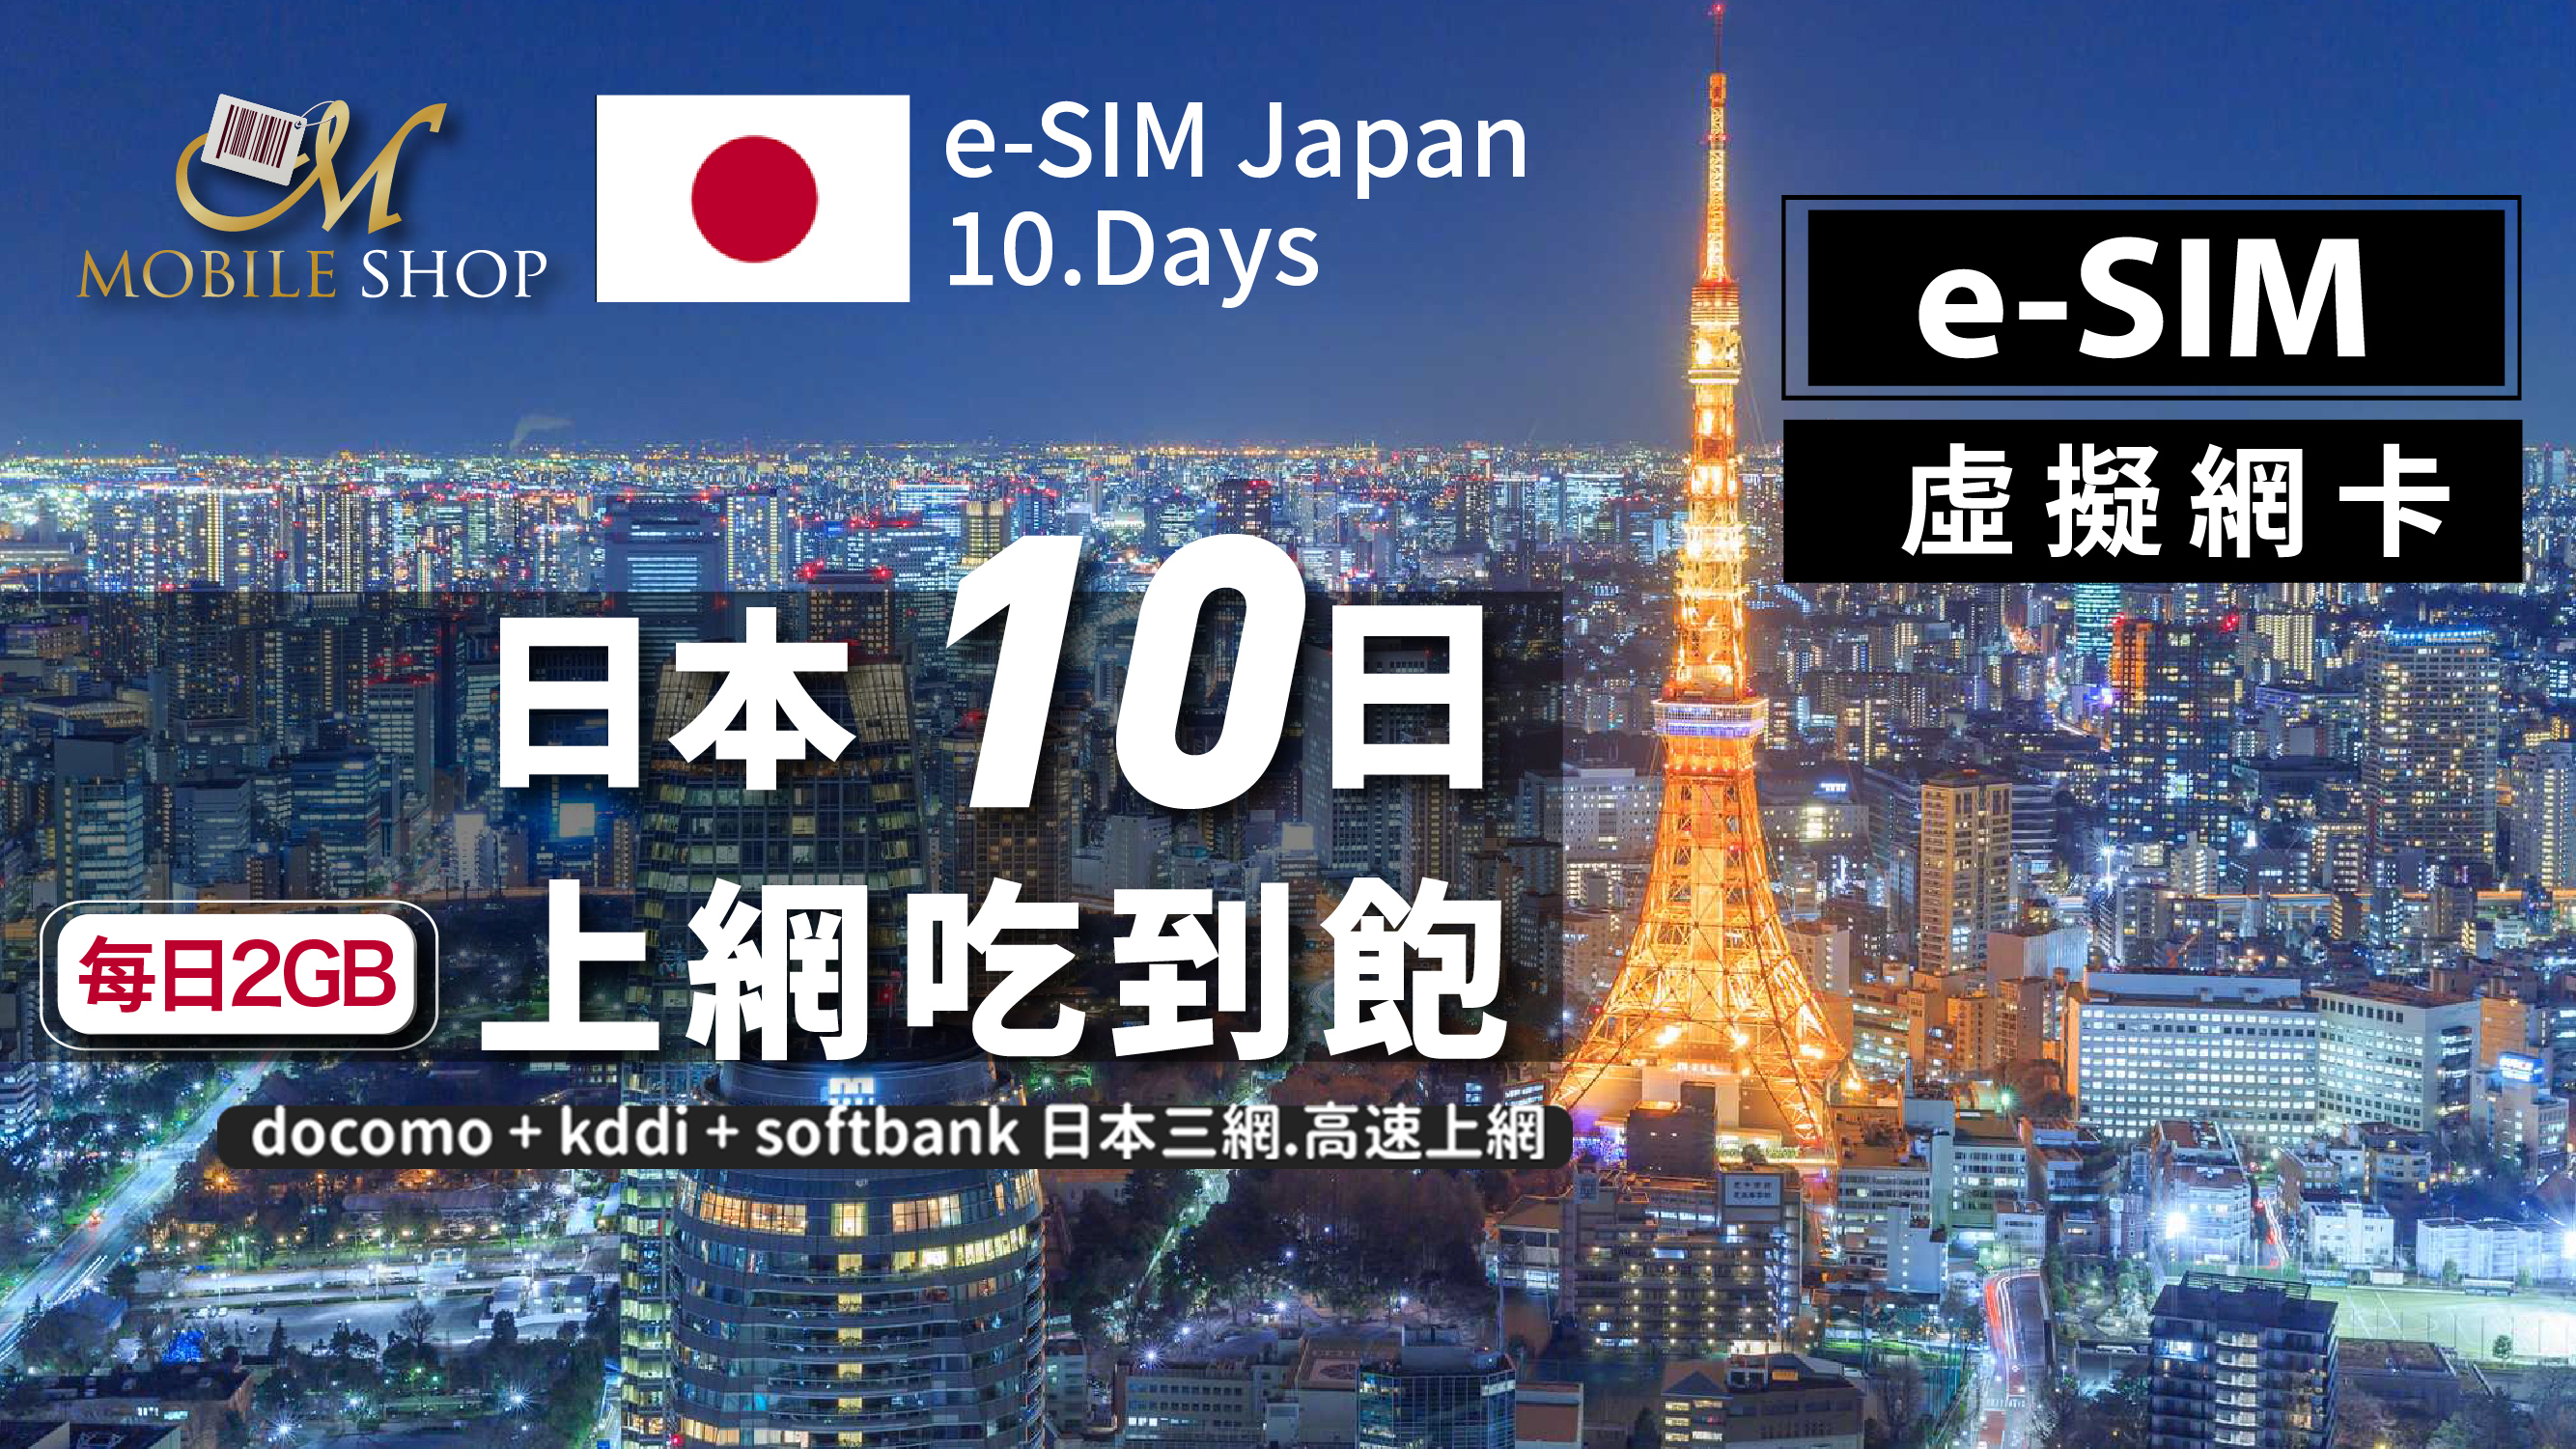 eSIM Japan 10days/2GB day unlimited data